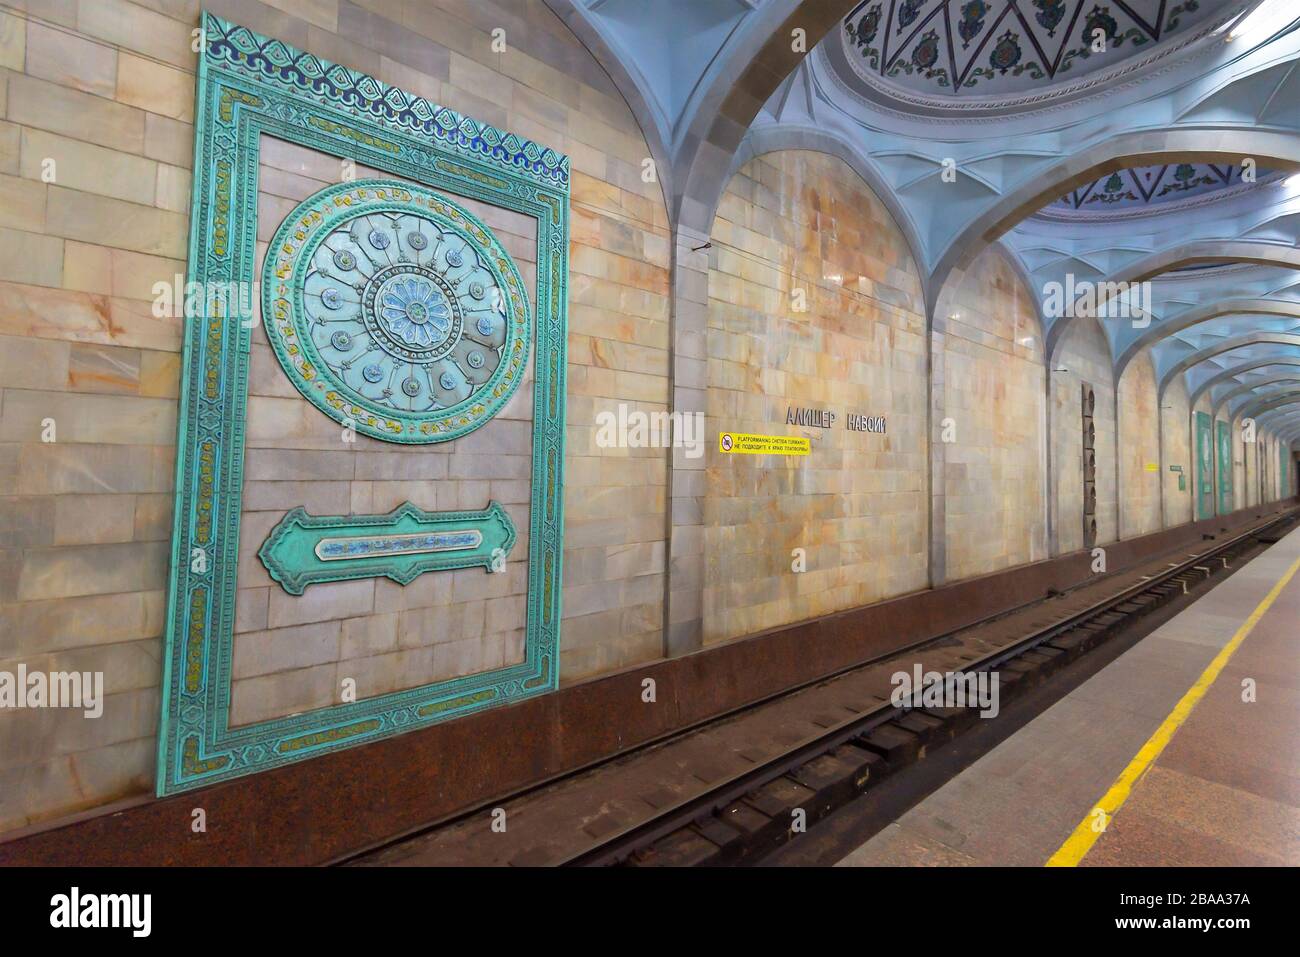 Vue détaillée de l'ornement dans la station de métro Alisher Navoi à Tachkent, en Ouzbékistan, en Asie centrale. Plate-forme de métro montrant le vieux sentier de l'URSS Times. Banque D'Images